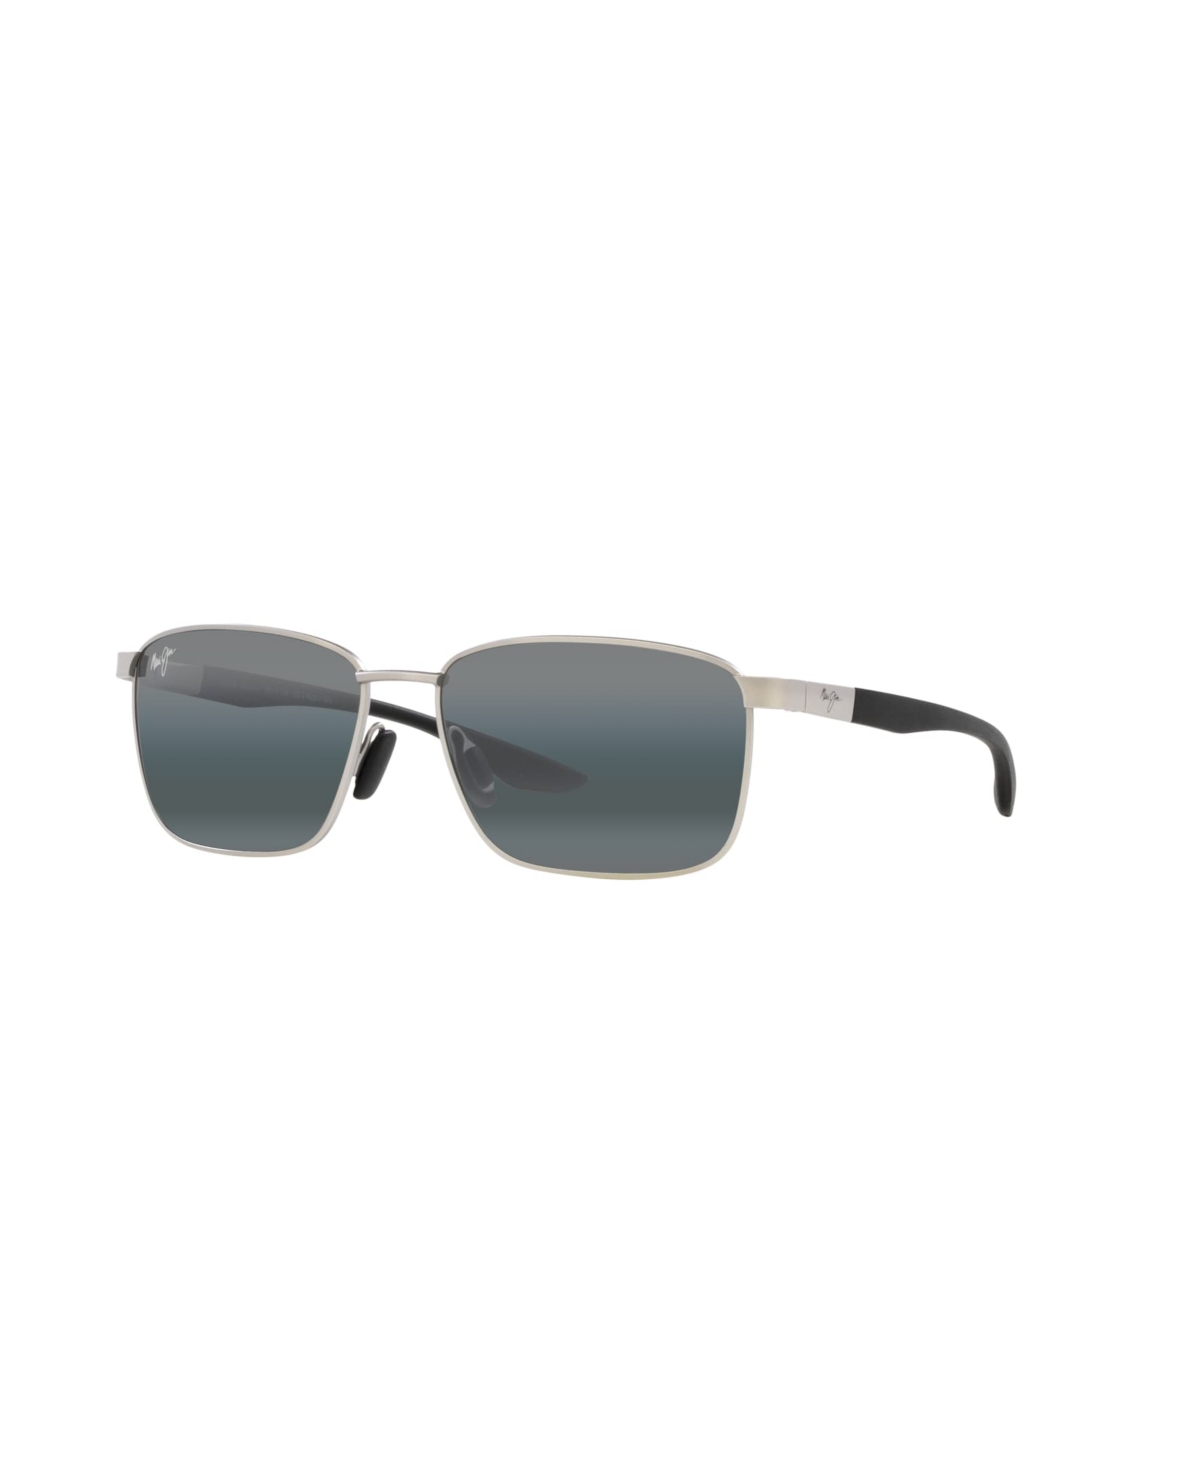 Maui Jim Unisex Polarized Sunglasses, Mj000676 Kaala 58 In Silver